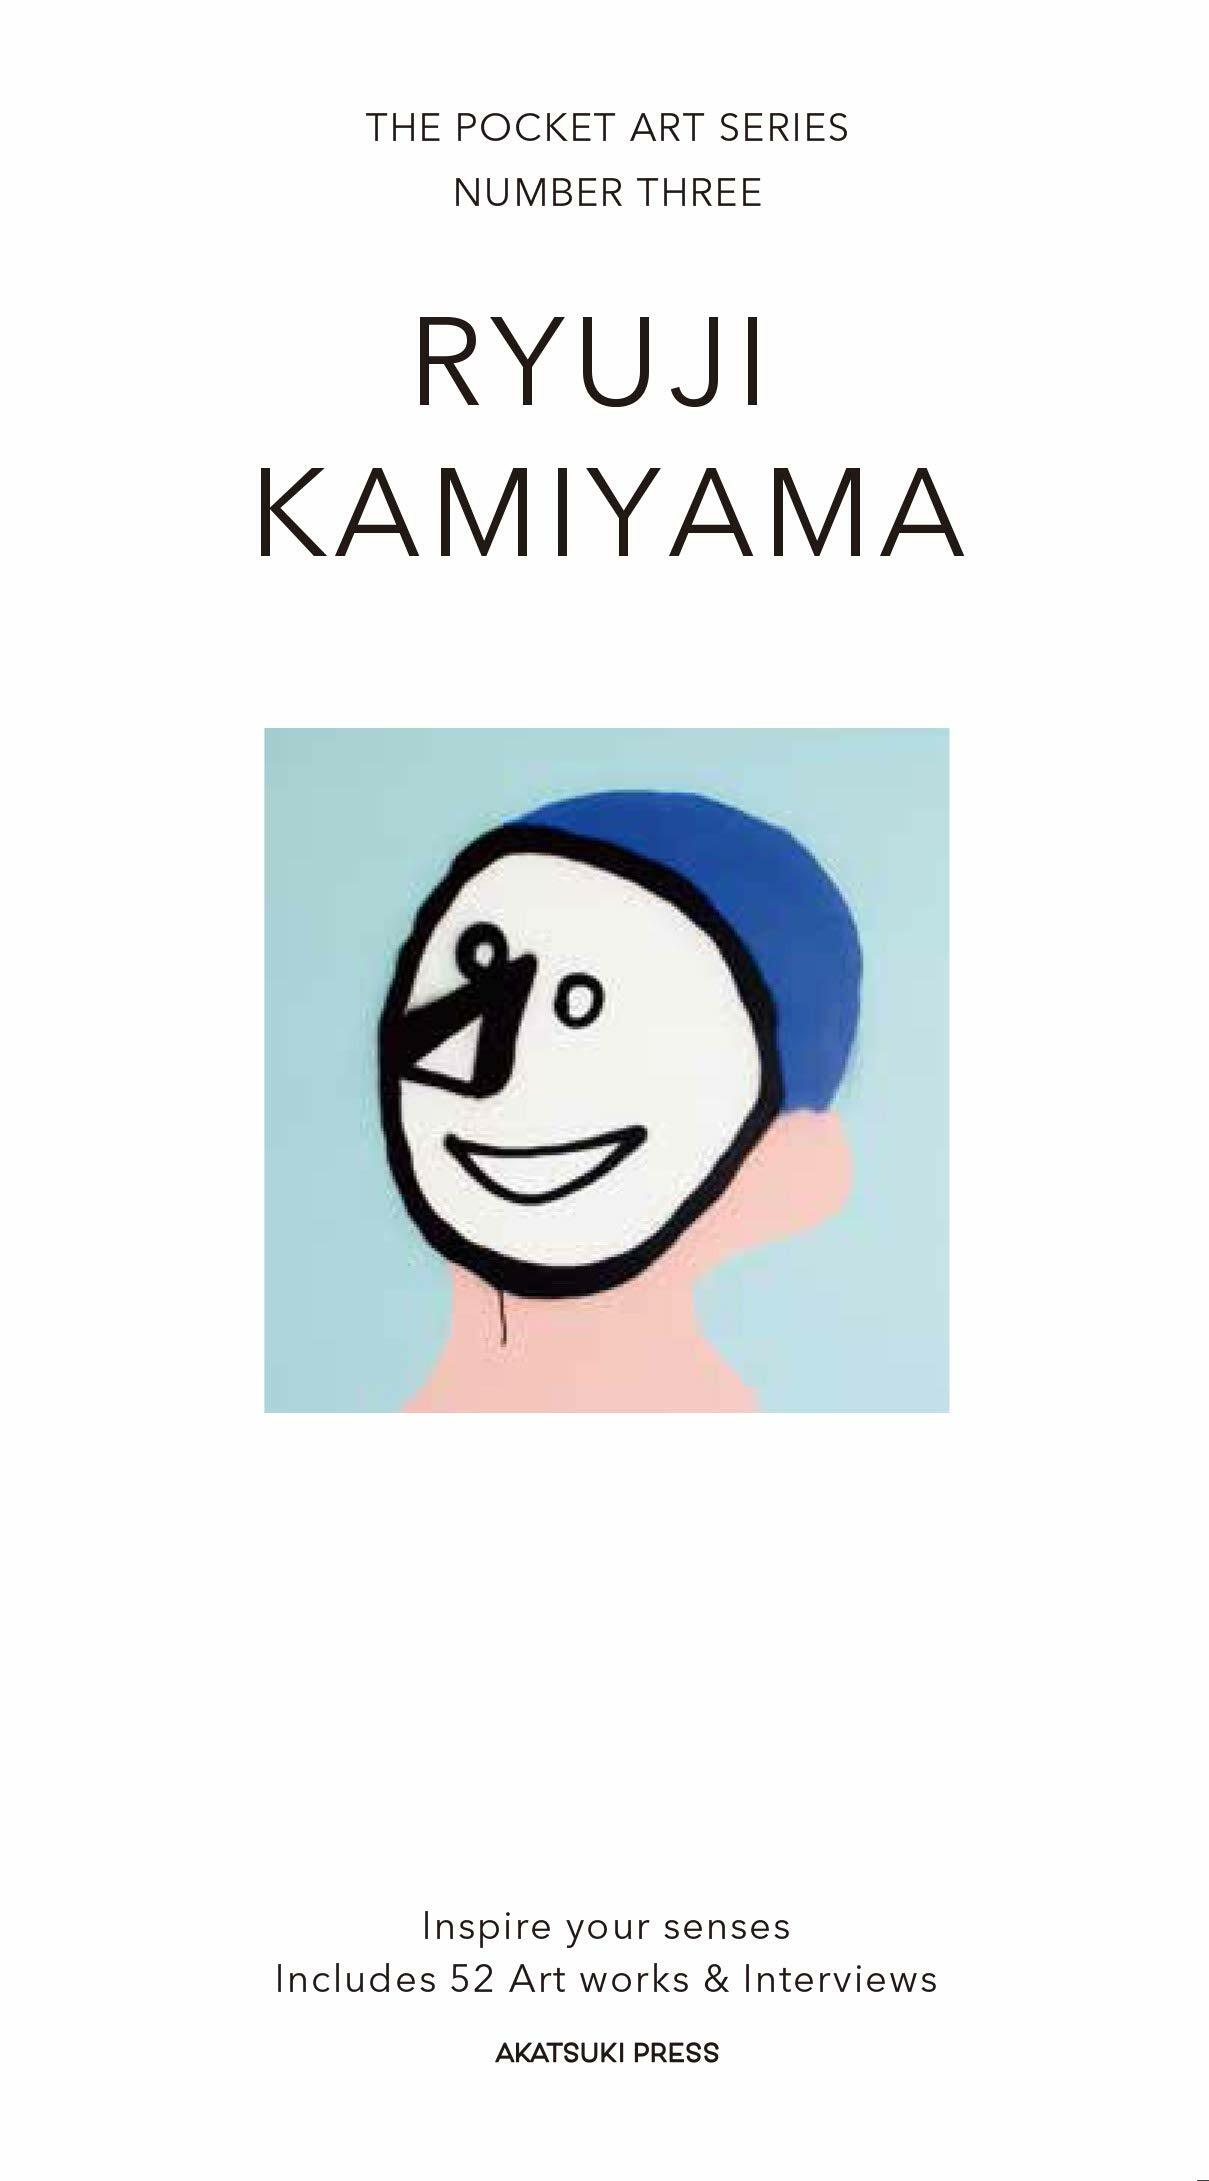 RYUJI KAMIYAMA THE POCKET ART SERIES NUMBER THREE (アカツキプレス)